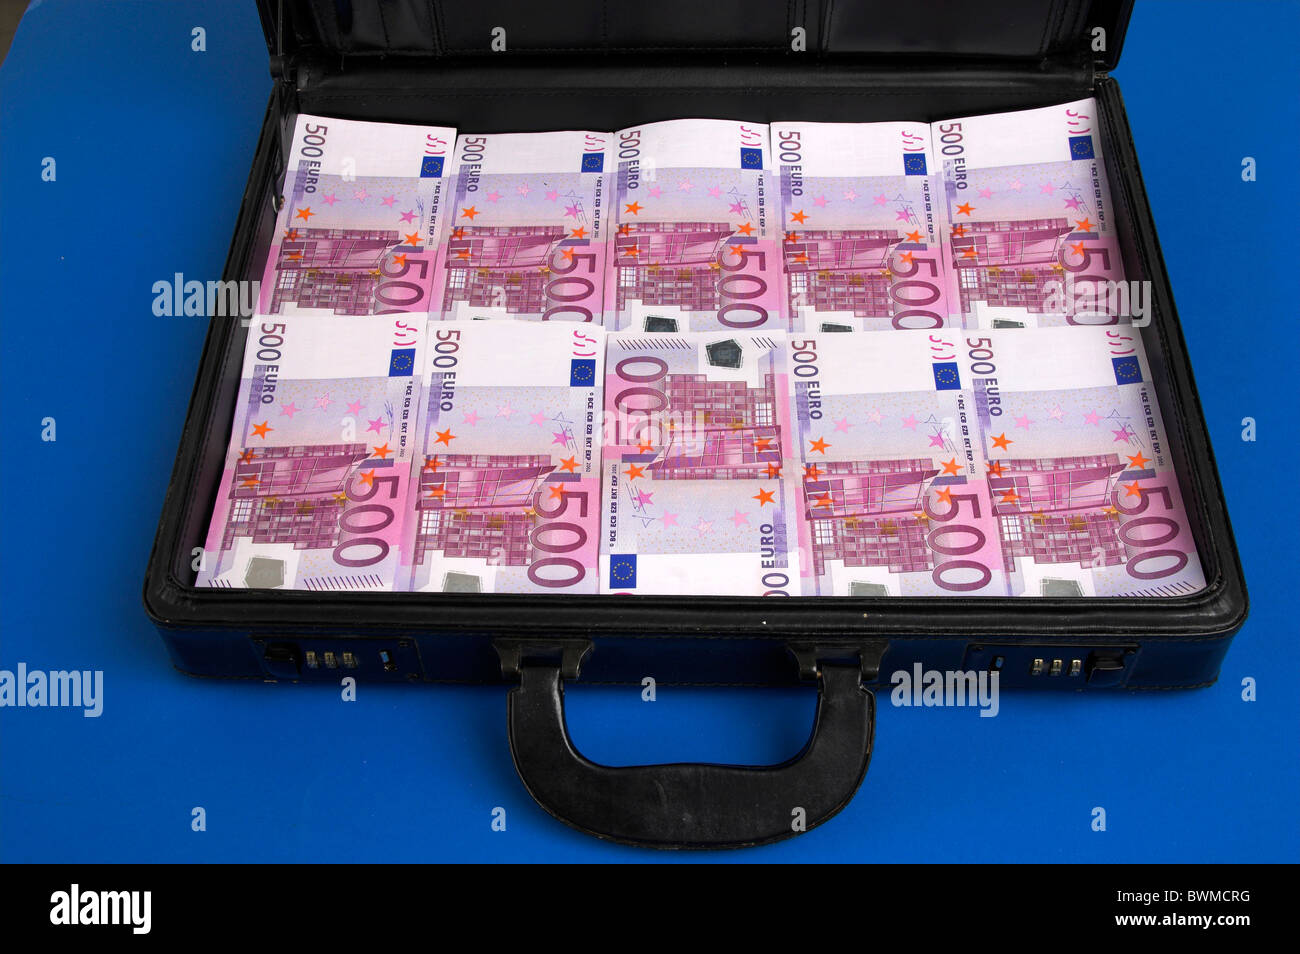 Euro Euro Banknoten Rechnungen Banknoten Geldscheine kennzeichnet Hinweise,  dass Währung EU Europa Finanzen Koffer Mo Stockfotografie - Alamy